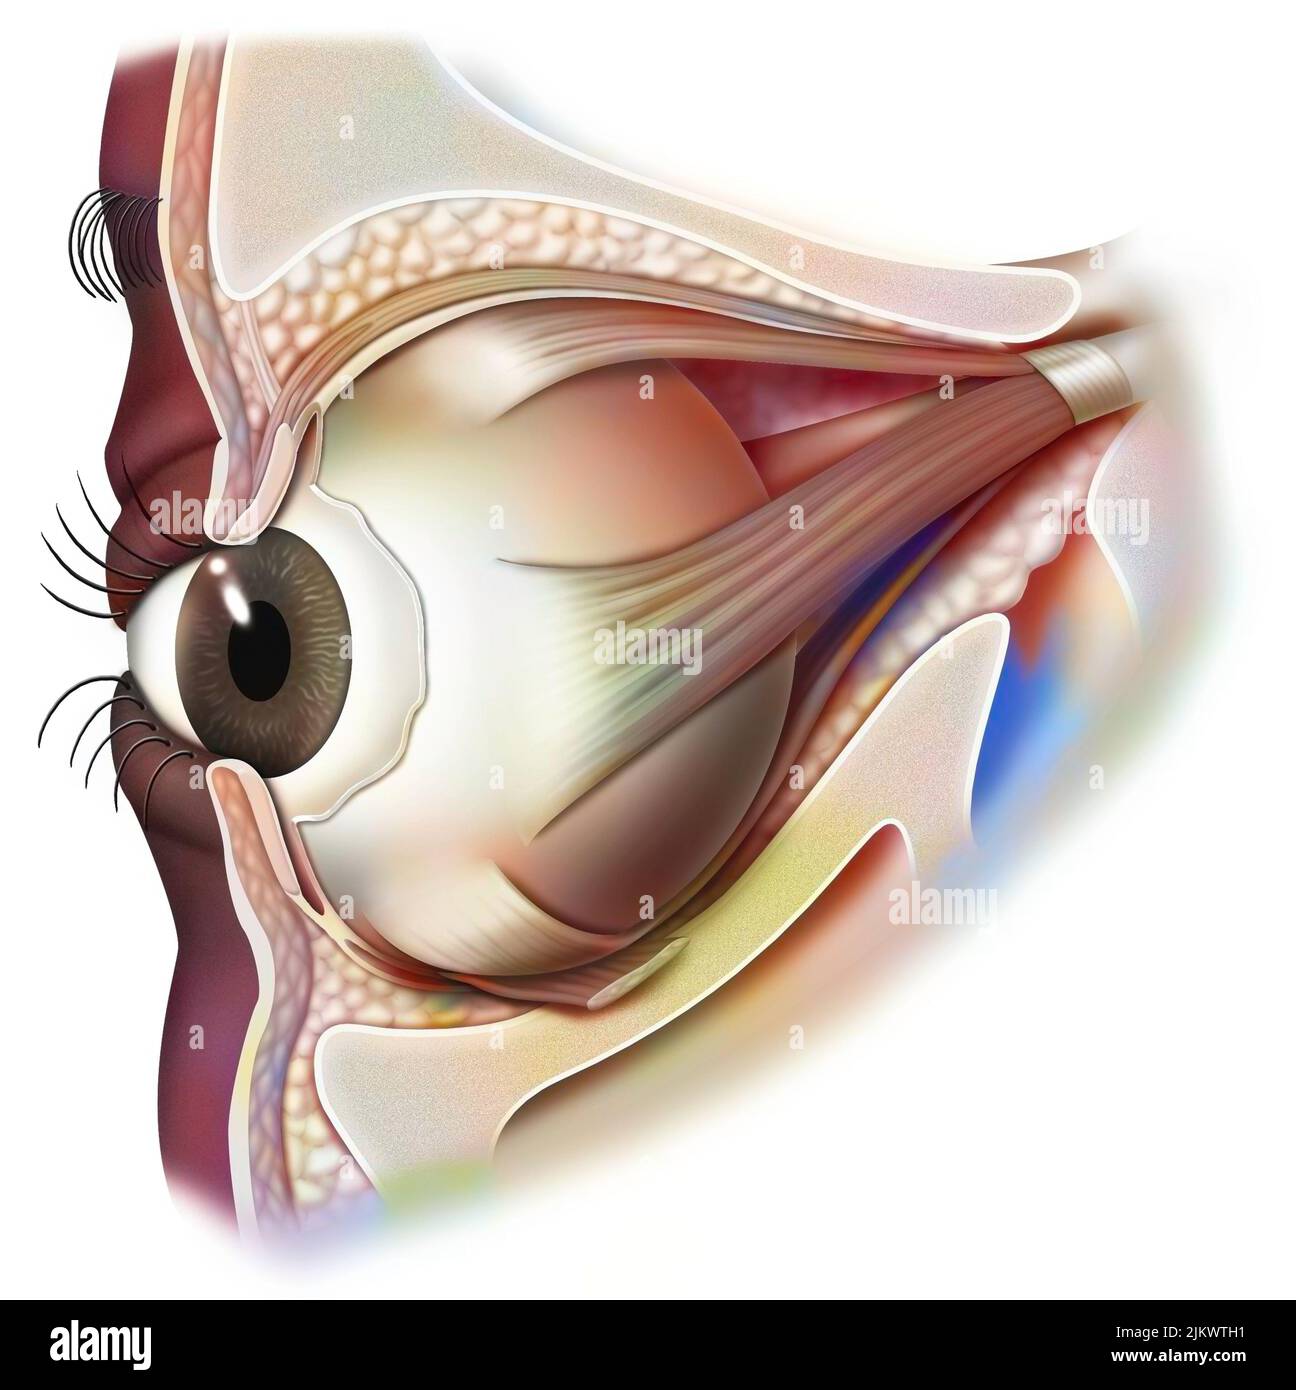 Anatomía del ojo y párpado (visto desde 3/4) con iris, pupila. Foto de stock